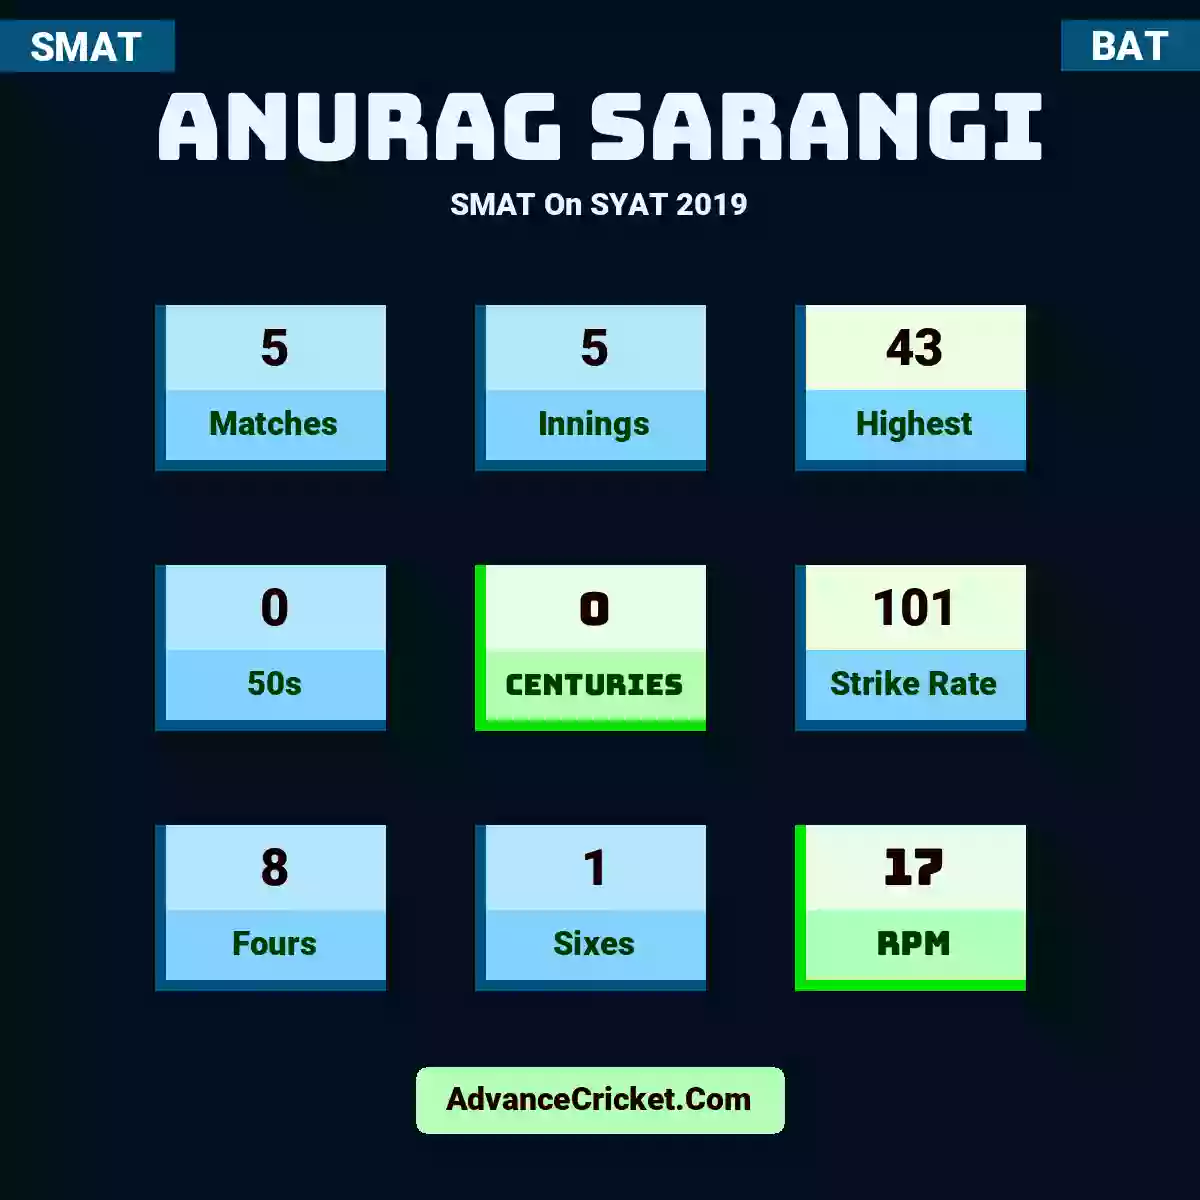 Anurag Sarangi SMAT  On SYAT 2019, Anurag Sarangi played 5 matches, scored 43 runs as highest, 0 half-centuries, and 0 centuries, with a strike rate of 101. A.Sarangi hit 8 fours and 1 sixes, with an RPM of 17.